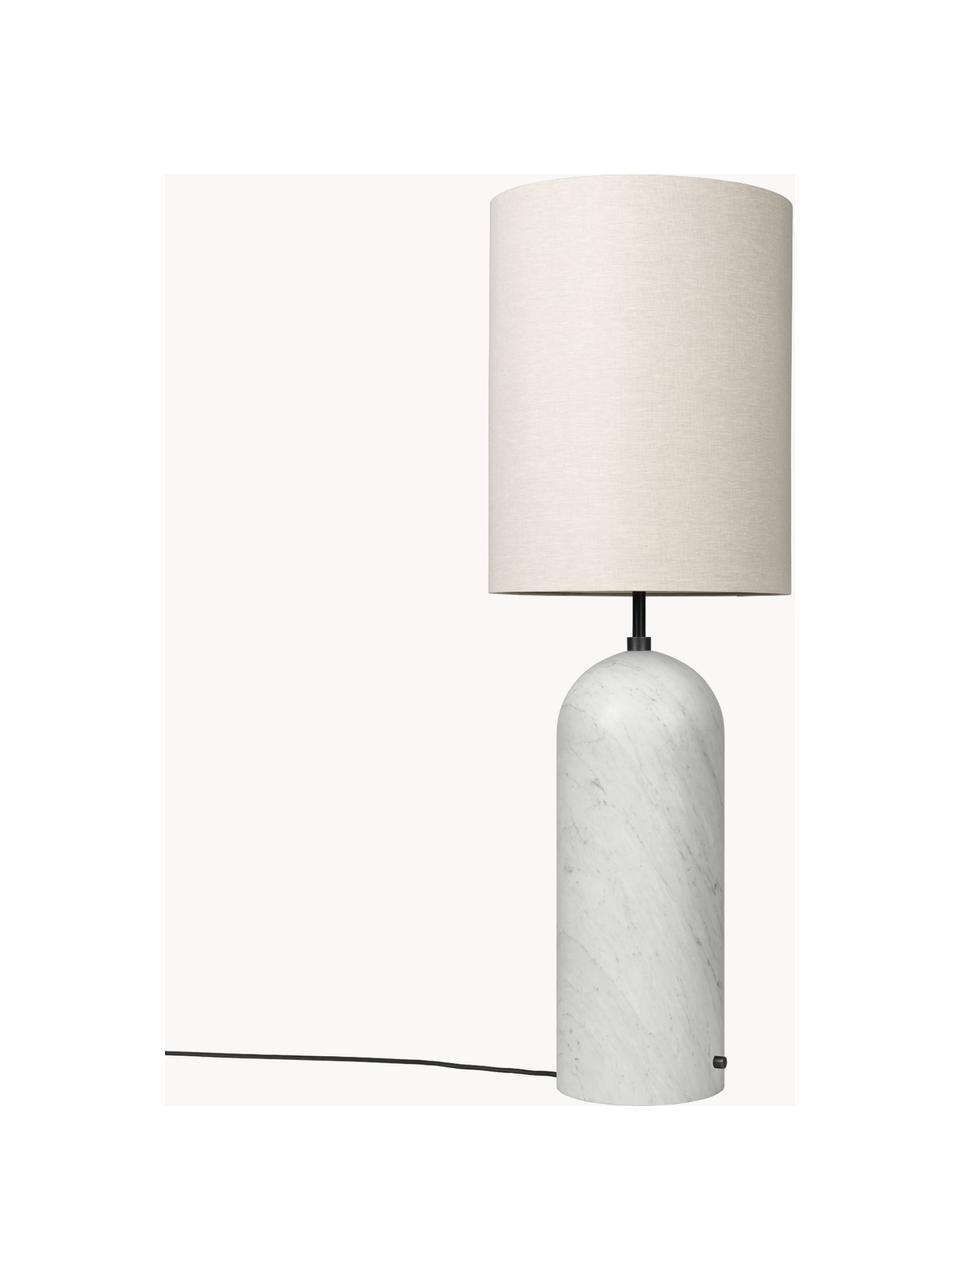 Kleine dimmbare Stehlampe Gravity mit Marmorfuss, Lampenschirm: Stoff, Hellbeige, Weiss marmoriert, H 130 cm